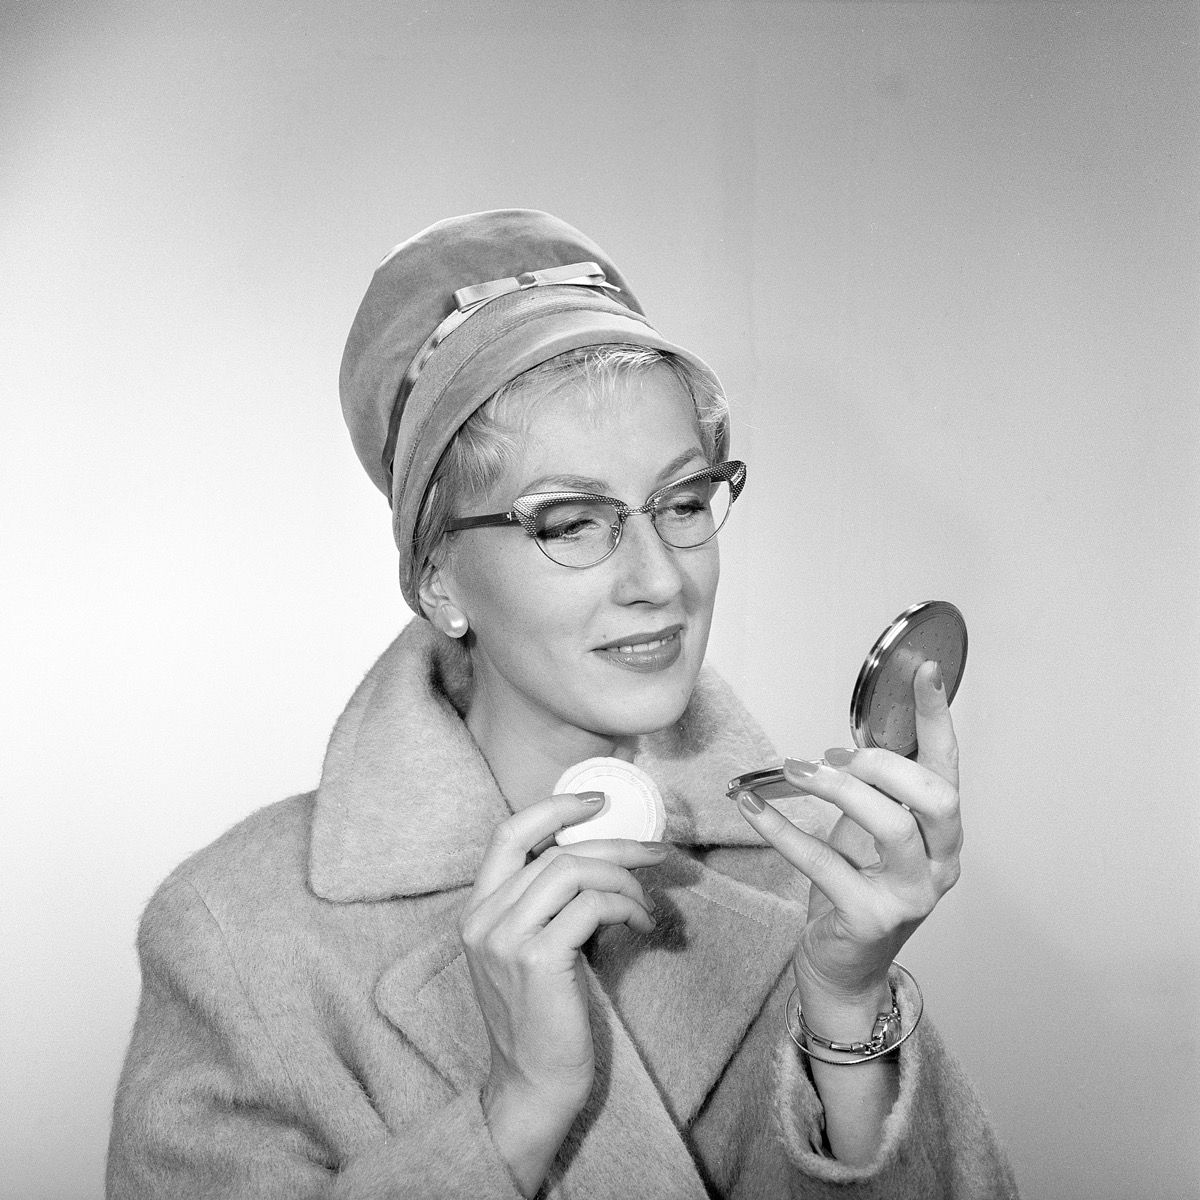 1950 का मेकअप। एक युवा महिला खुद को अपनी जेब के दर्पण में देख रही है और अपने मेकअप में सुधार करती है। उसने एक फैशनेबल टोपी, विशिष्ट 50 का चश्मा और एक कोट पहना है। 1950 के दशक